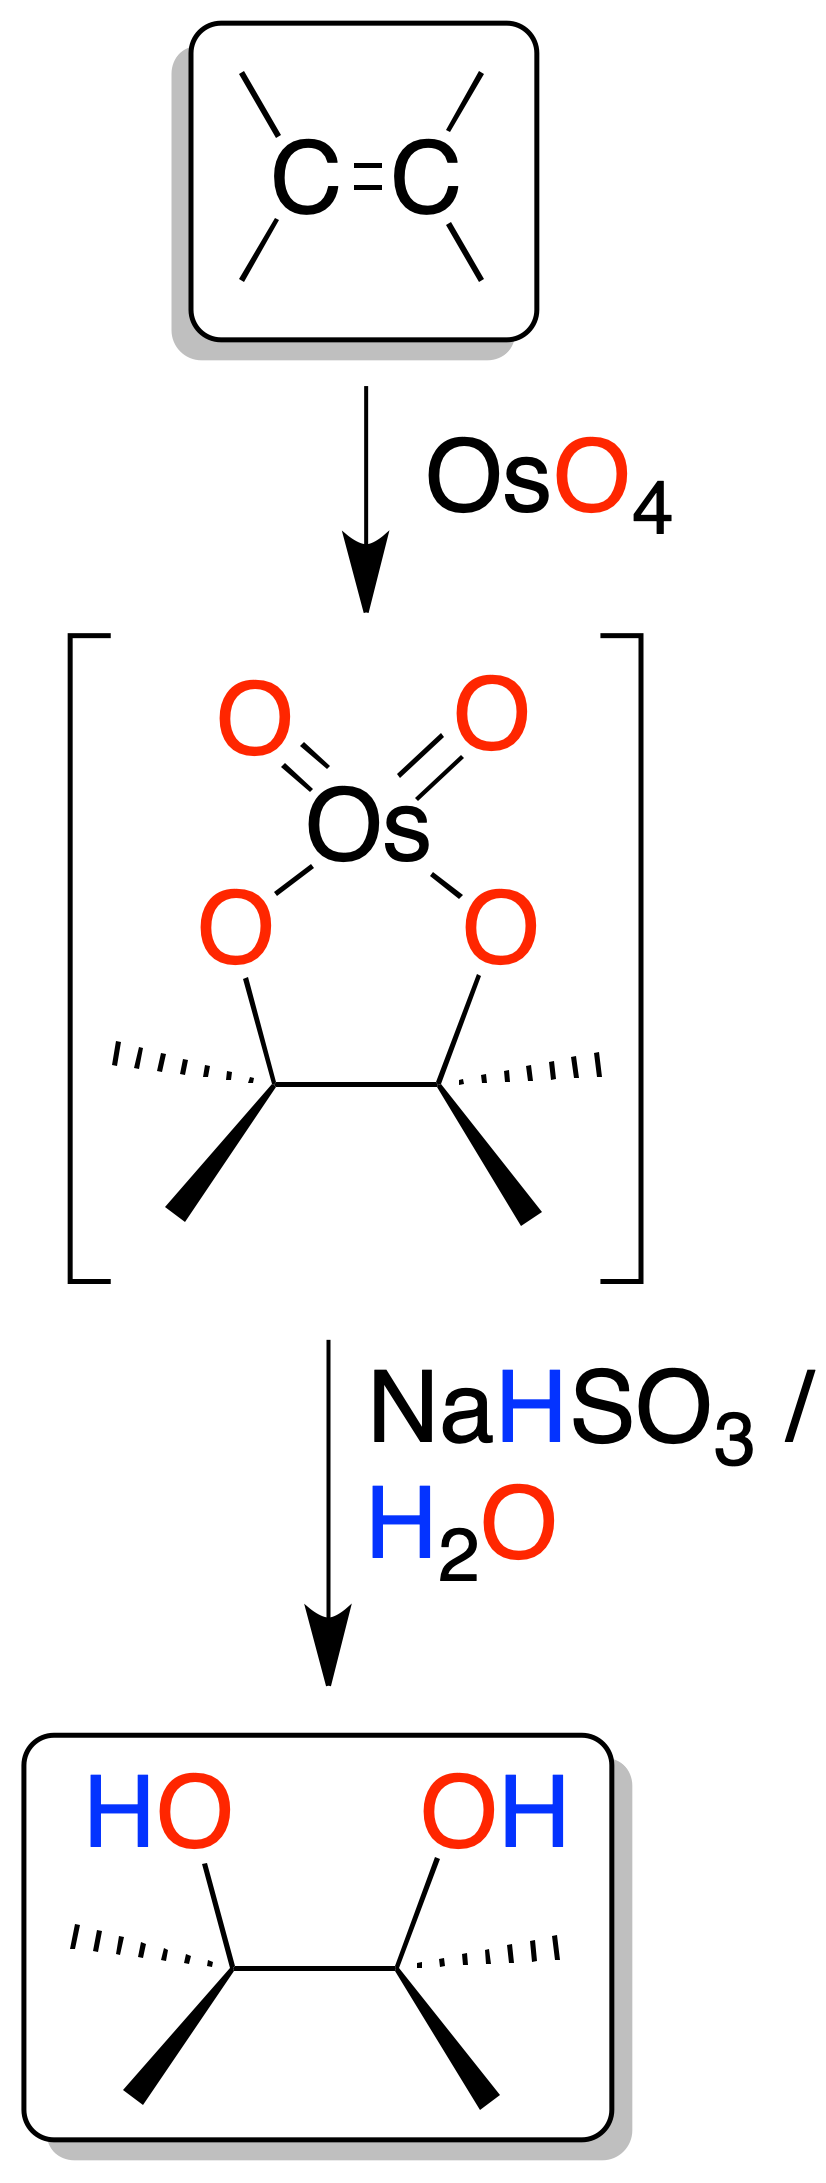 reactivity of alkenes: Oxidation of alkenes; Oxidation of alkenes to vicinal diols (glycols)